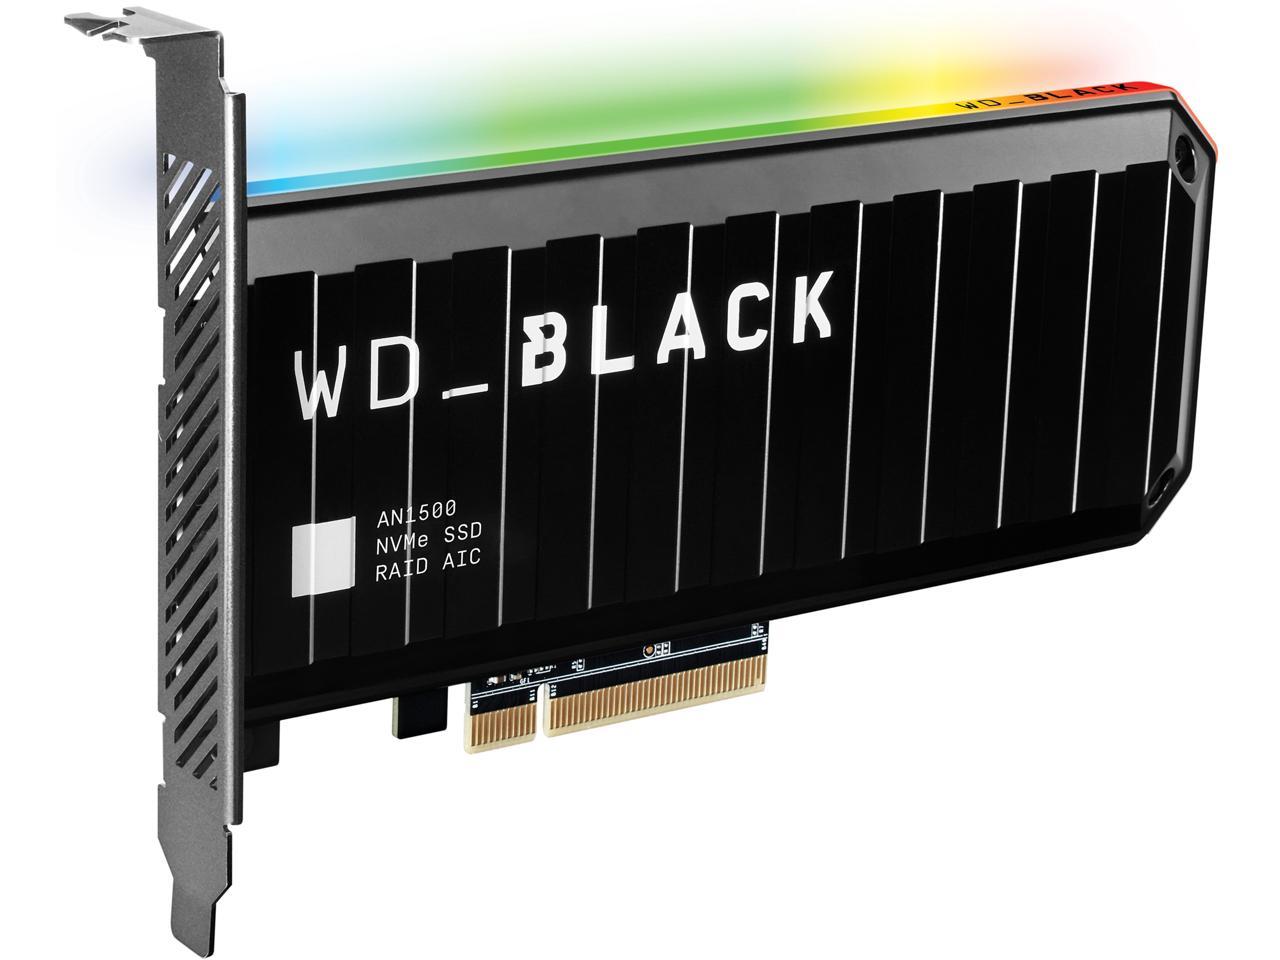 Western Digital WD BLACK AN1500 NVMe AIC 4TB PCI-Express 3.0 x8 Internal  Solid State Drive (SSD) WDS400T1X0L - Newegg.com